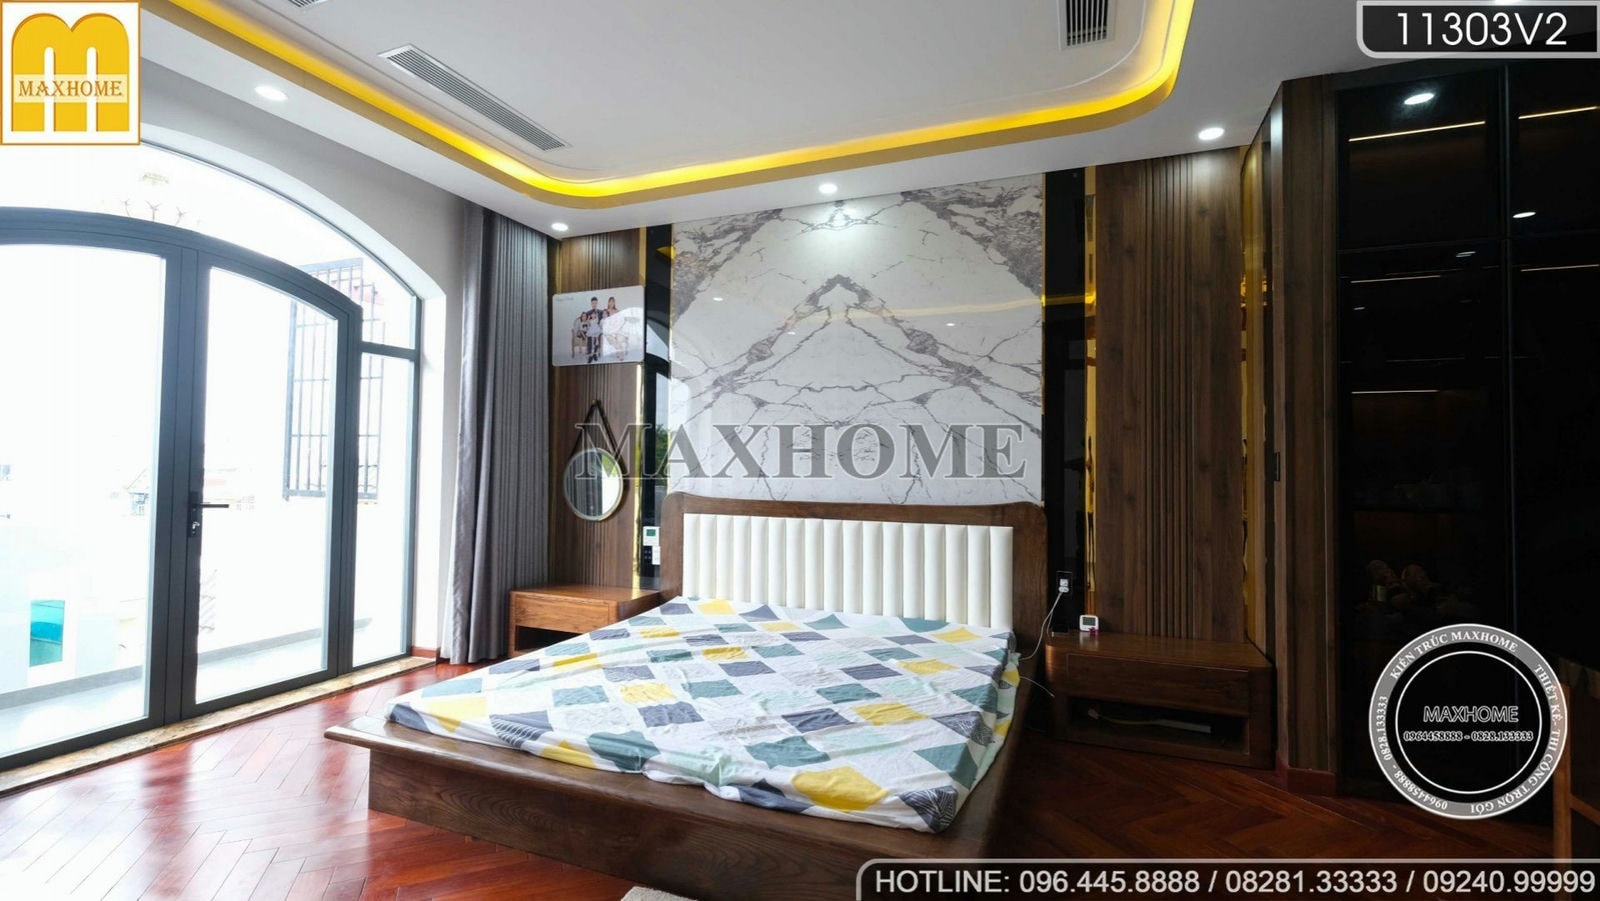 Maxhome thi công nội thất cho căn biệt thự đẹp và cao cấp | MH01169